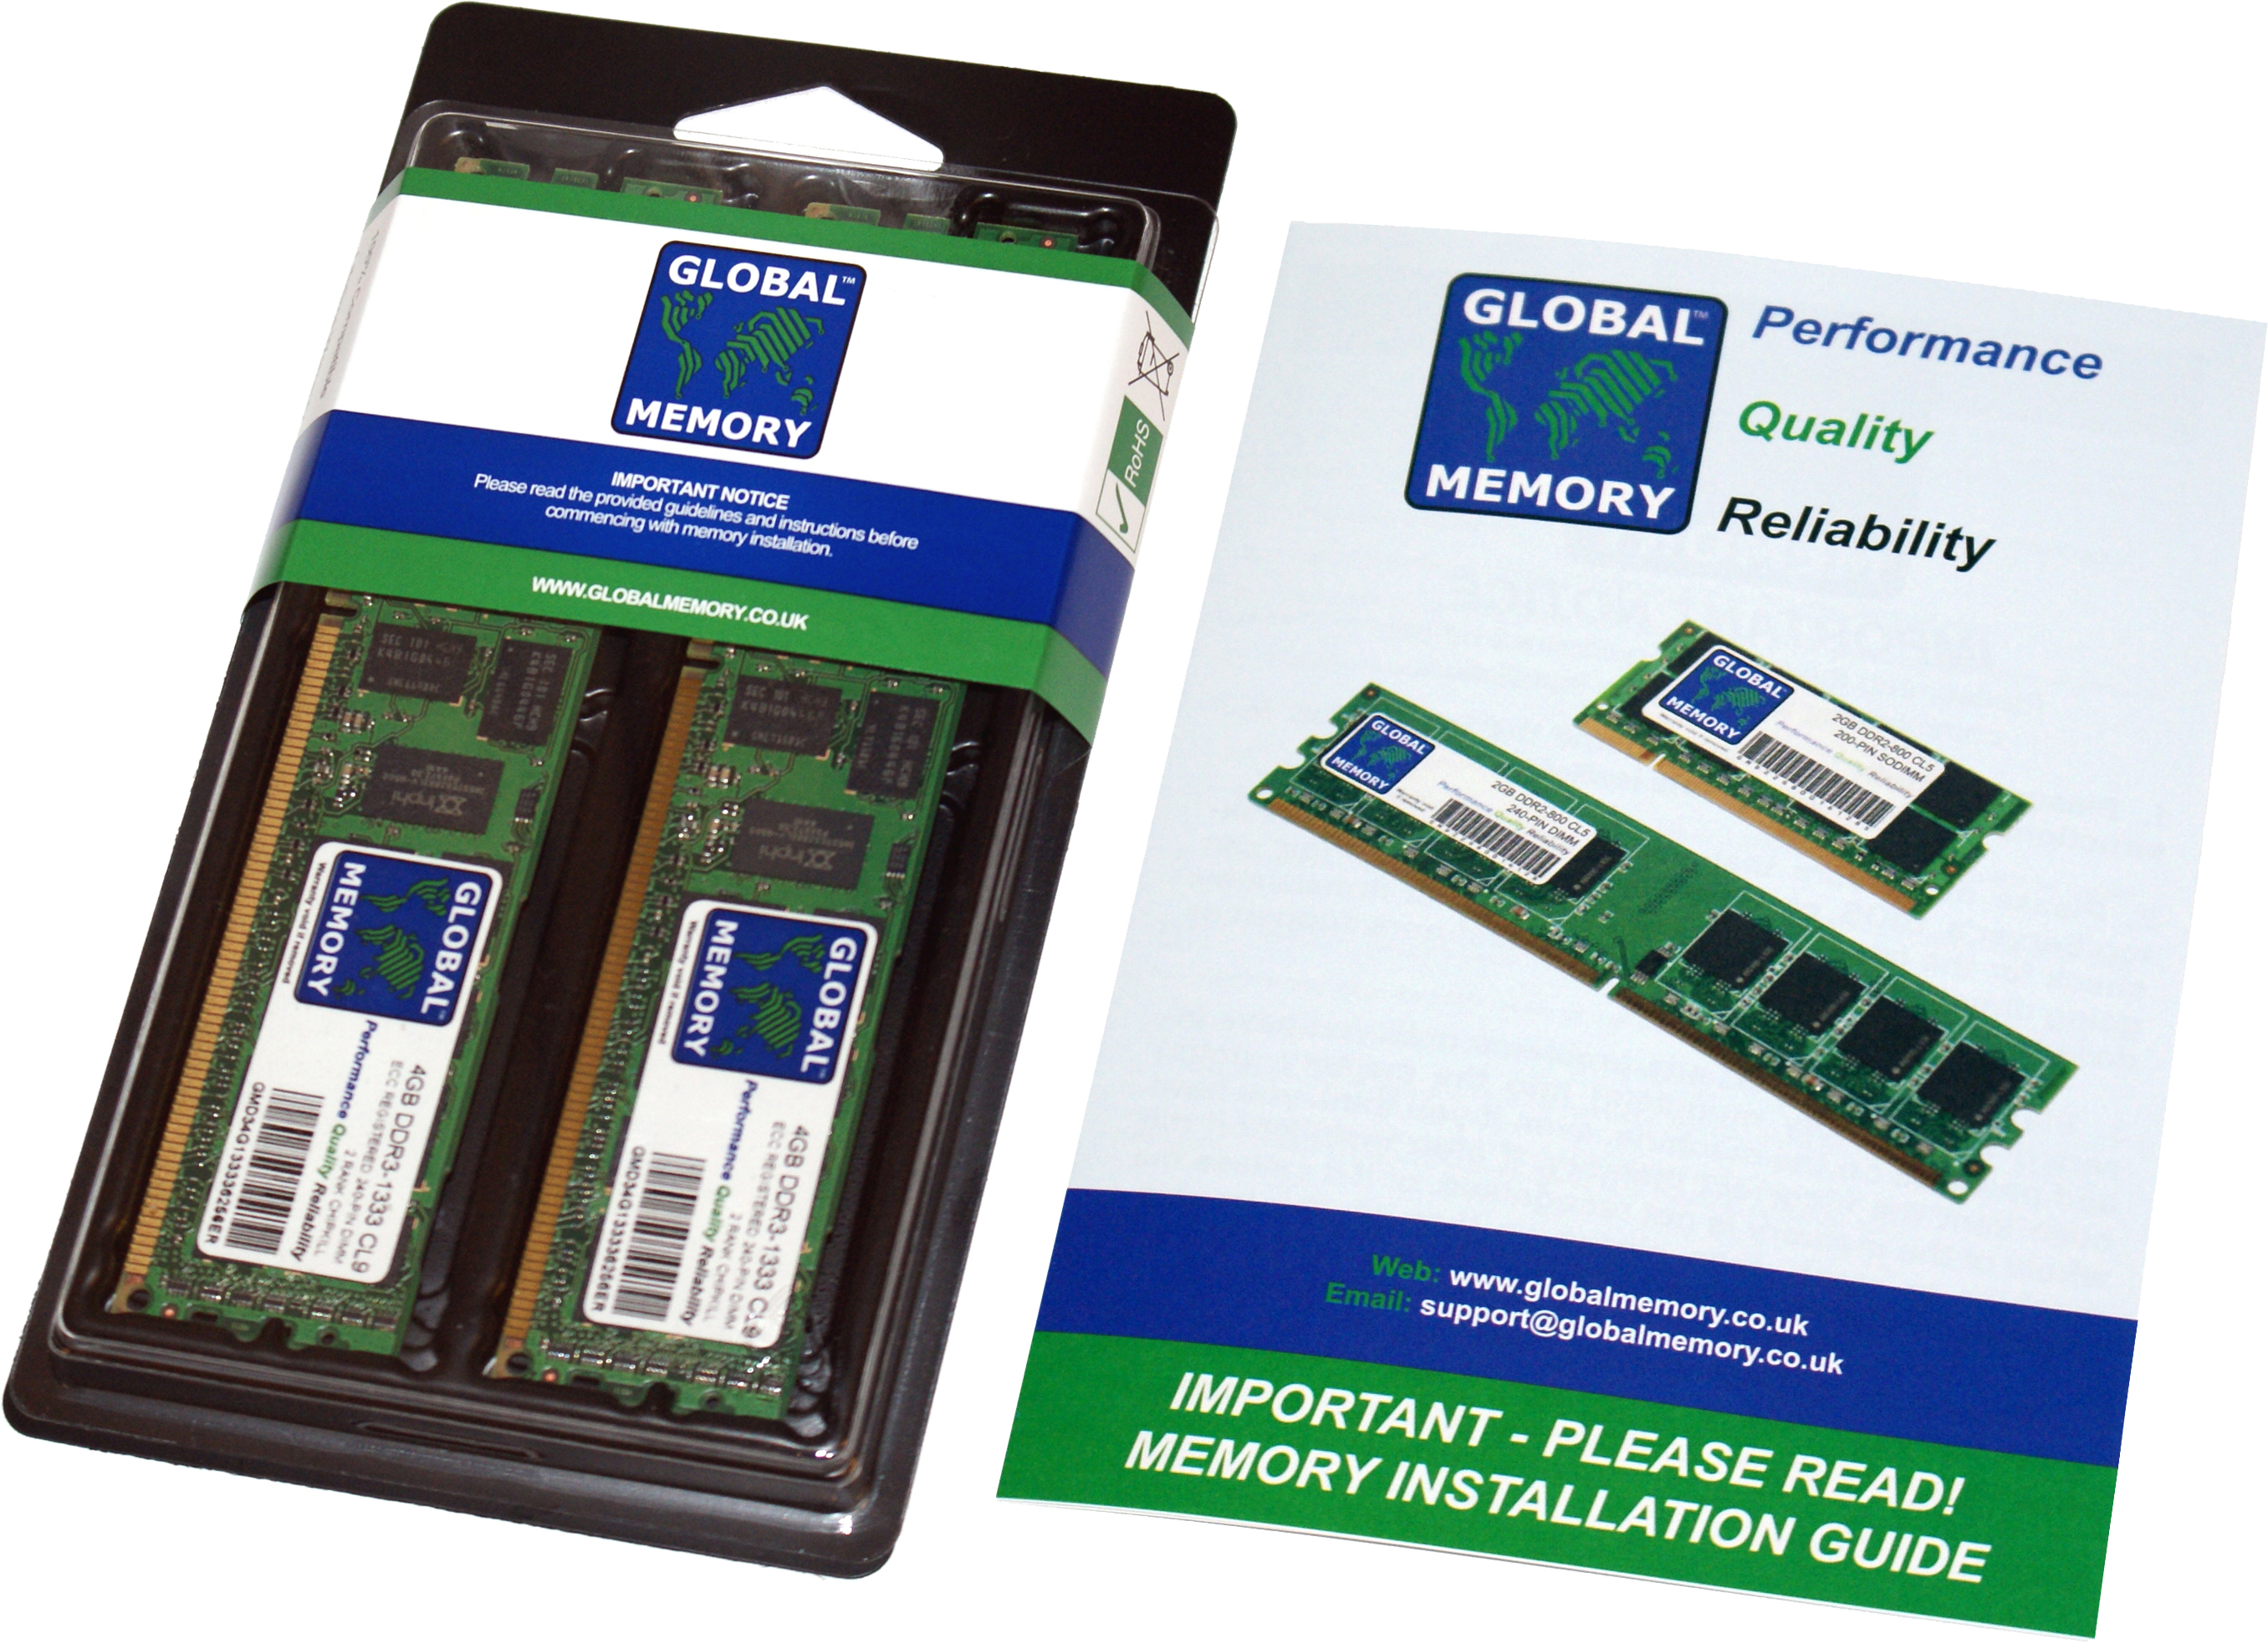 32GB (2 x 16GB) DDR4 2400MHz PC4-19200 288-PIN ECC REGISTERED DIMM (RDIMM) MEMORY RAM KIT FOR HEWLETT-PACKARD SERVERS/WORKSTATIONS (4 RANK KIT CHIPKILL)